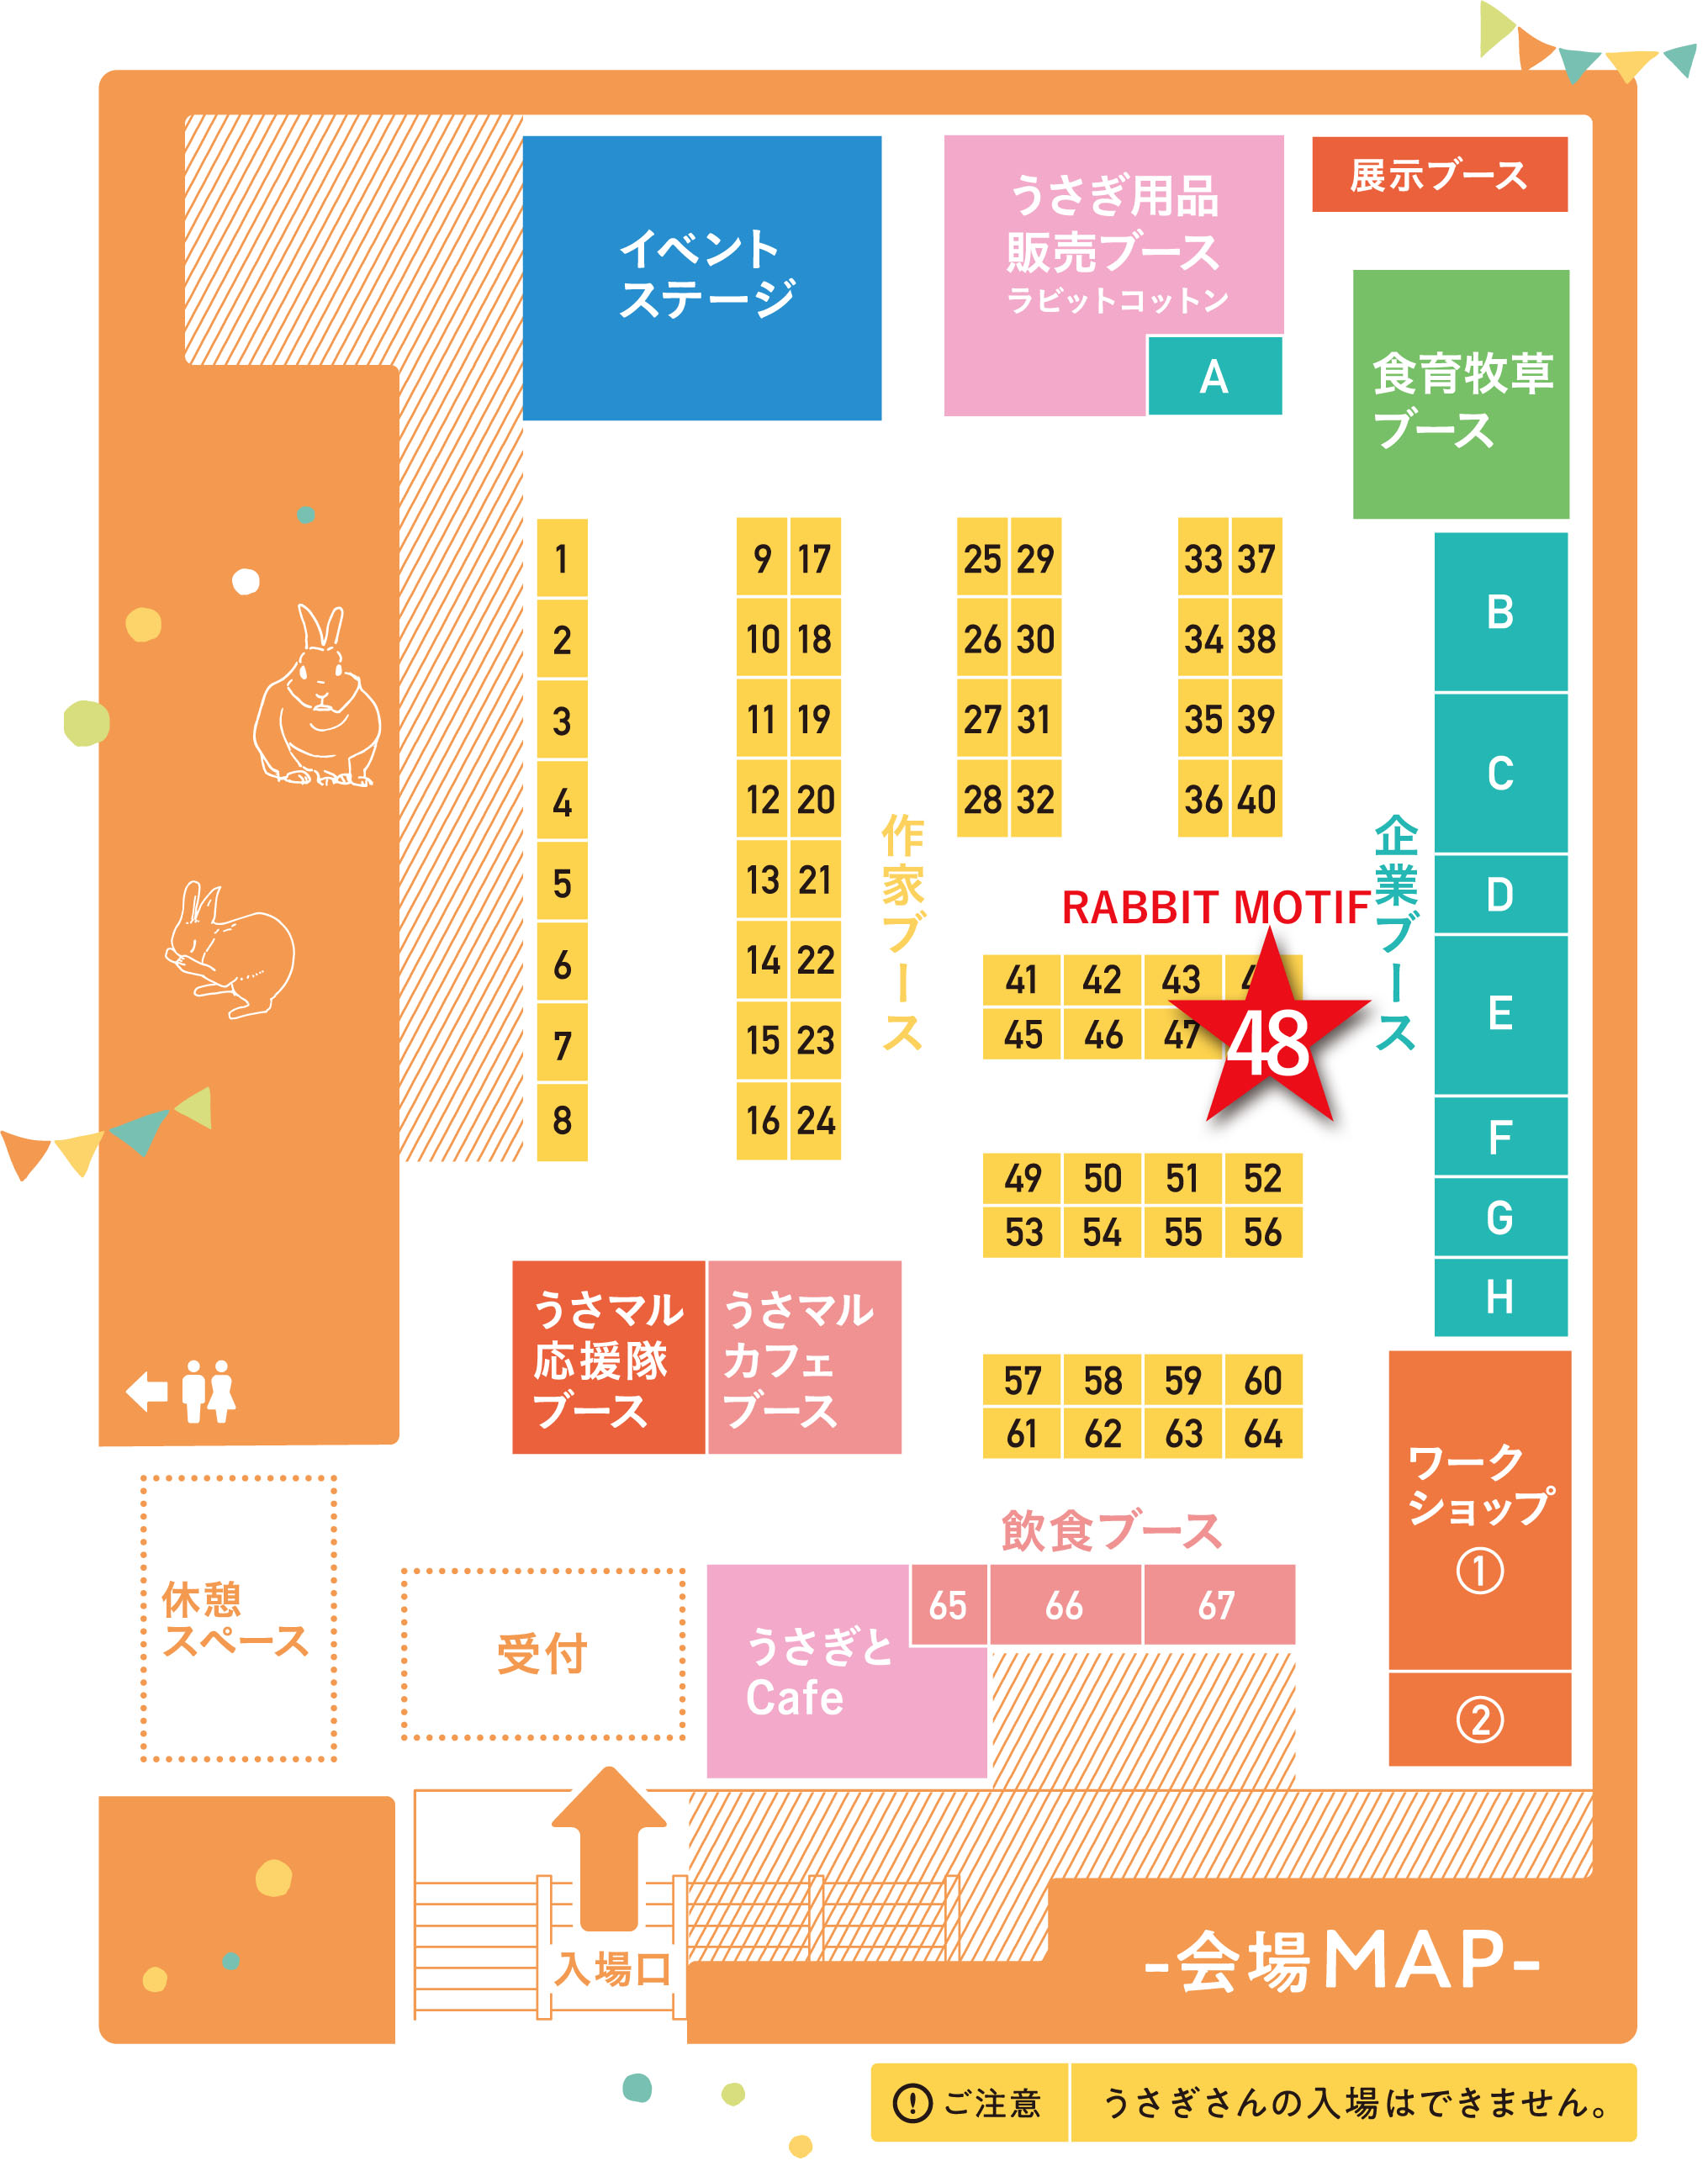 うさぎとマルシェ名古屋2019年10月13日開催イベント会場図